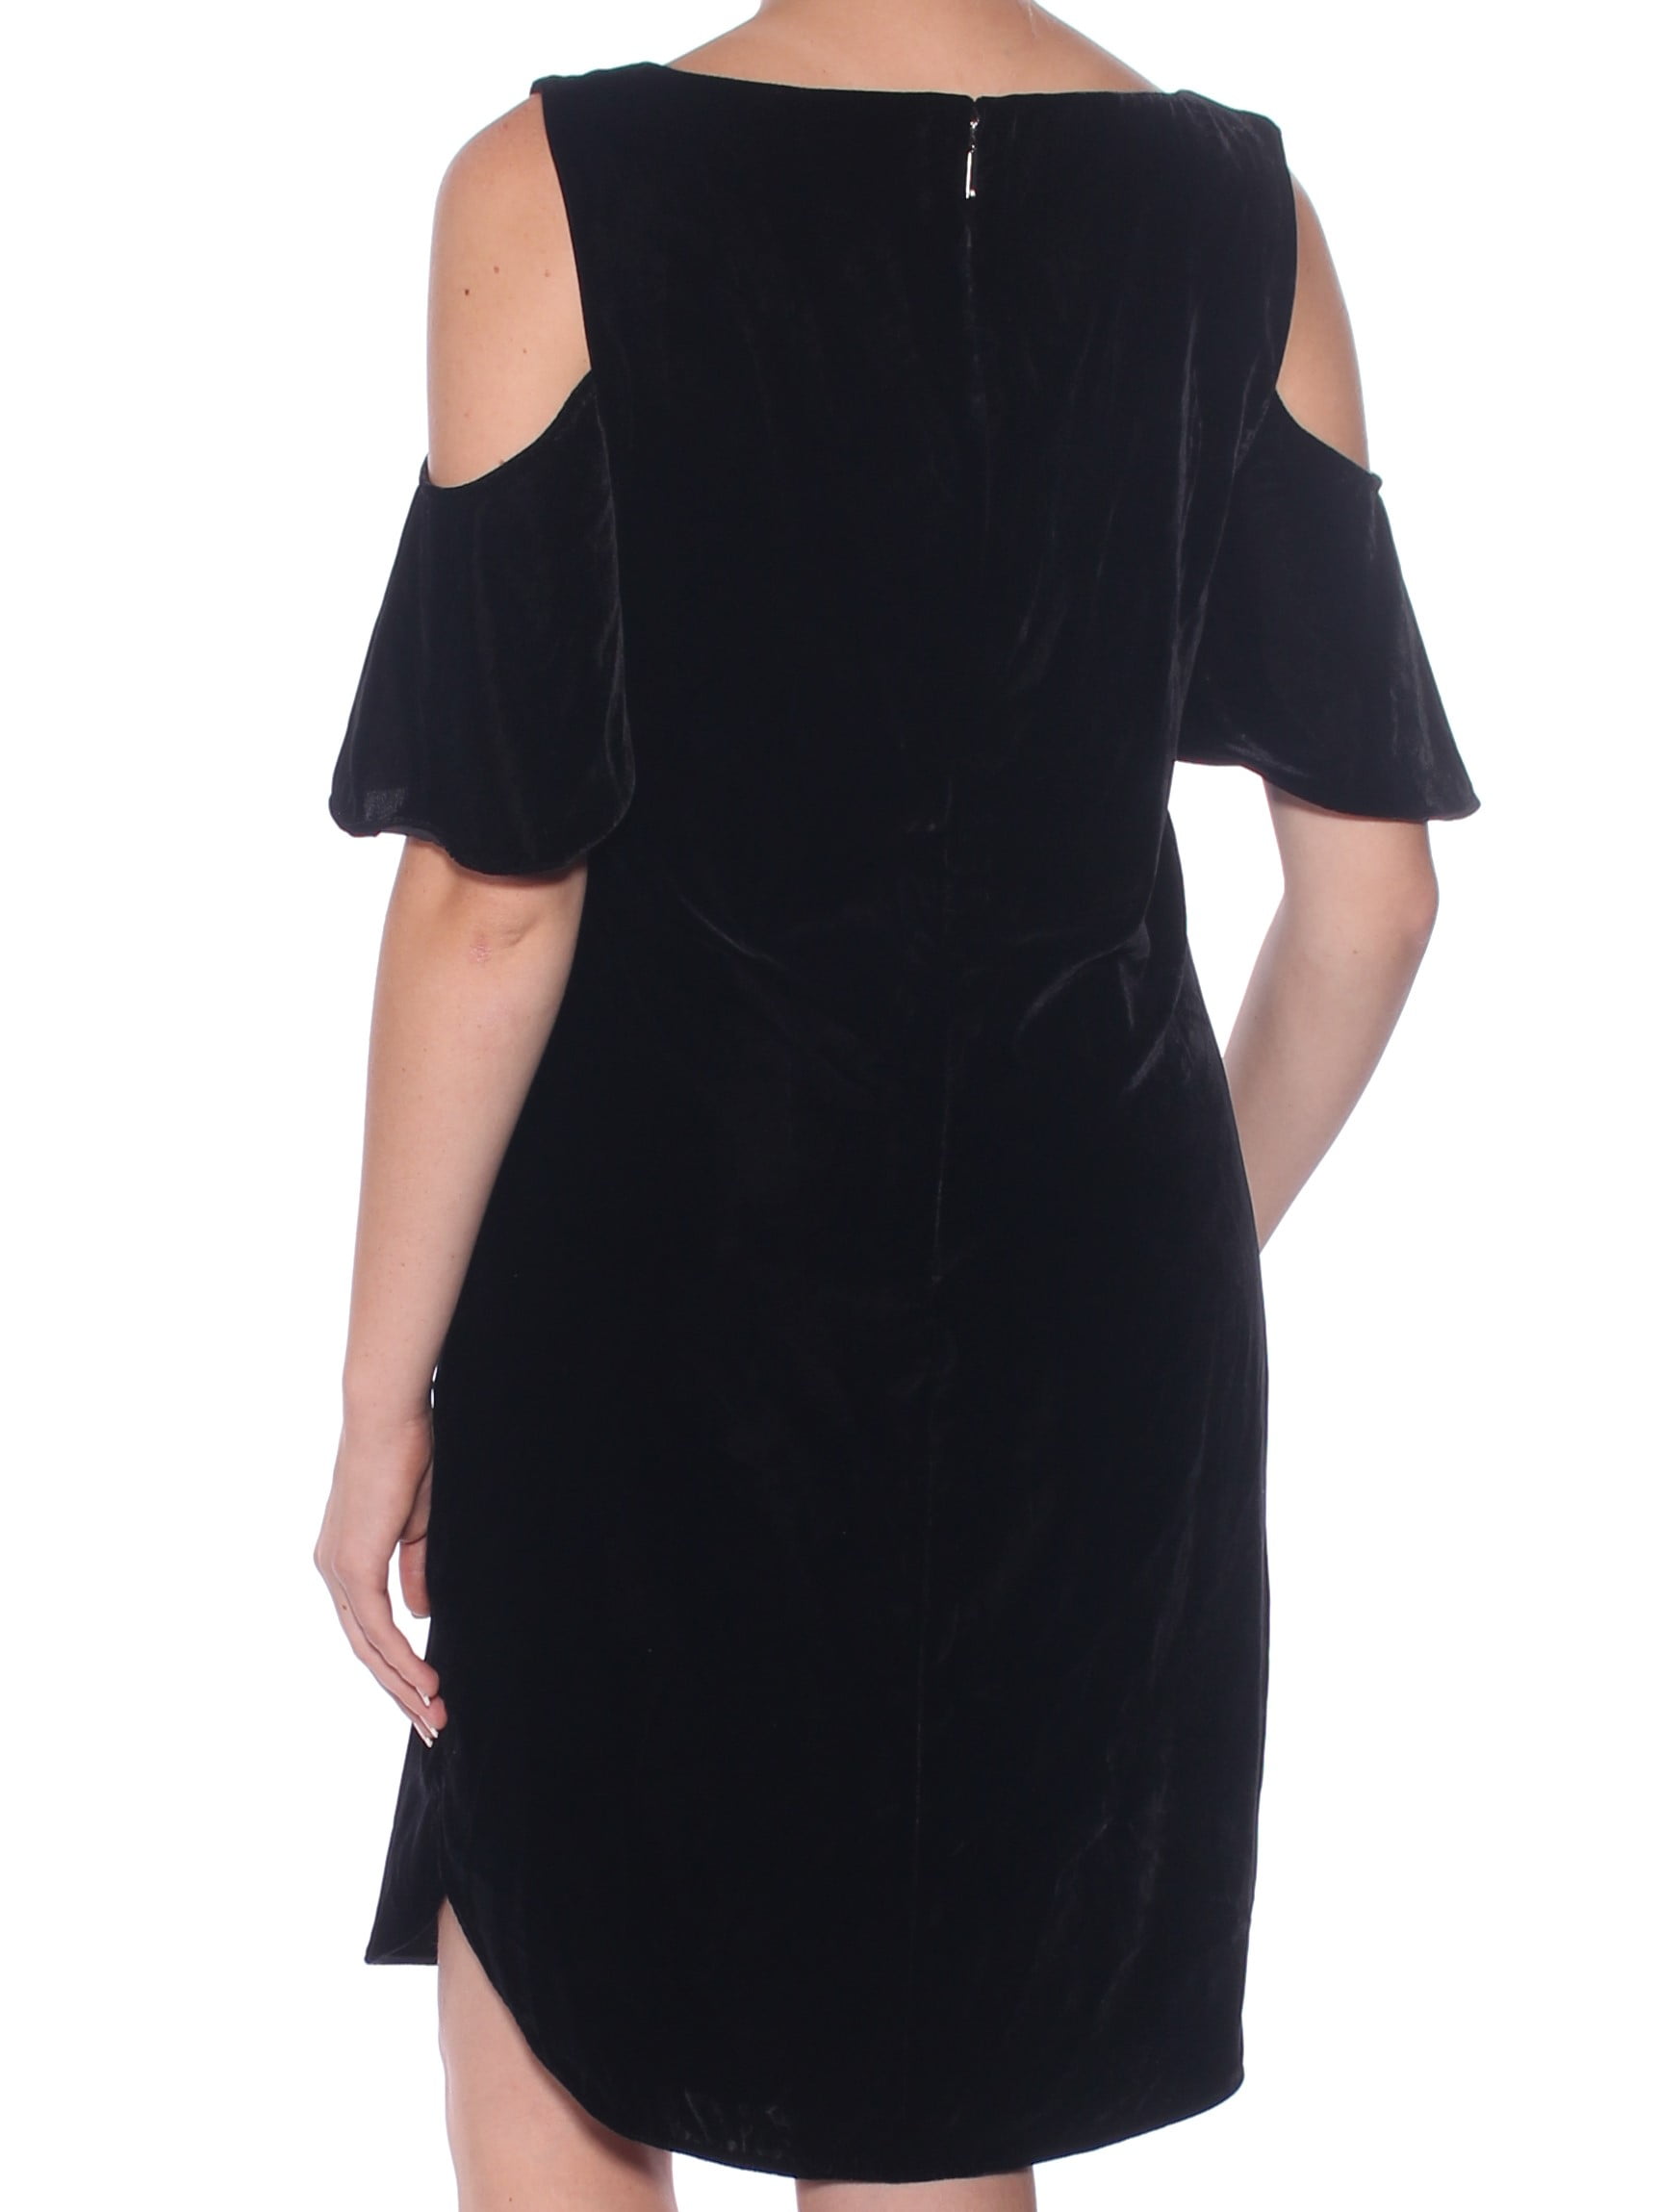 black cold shoulder cocktail dress